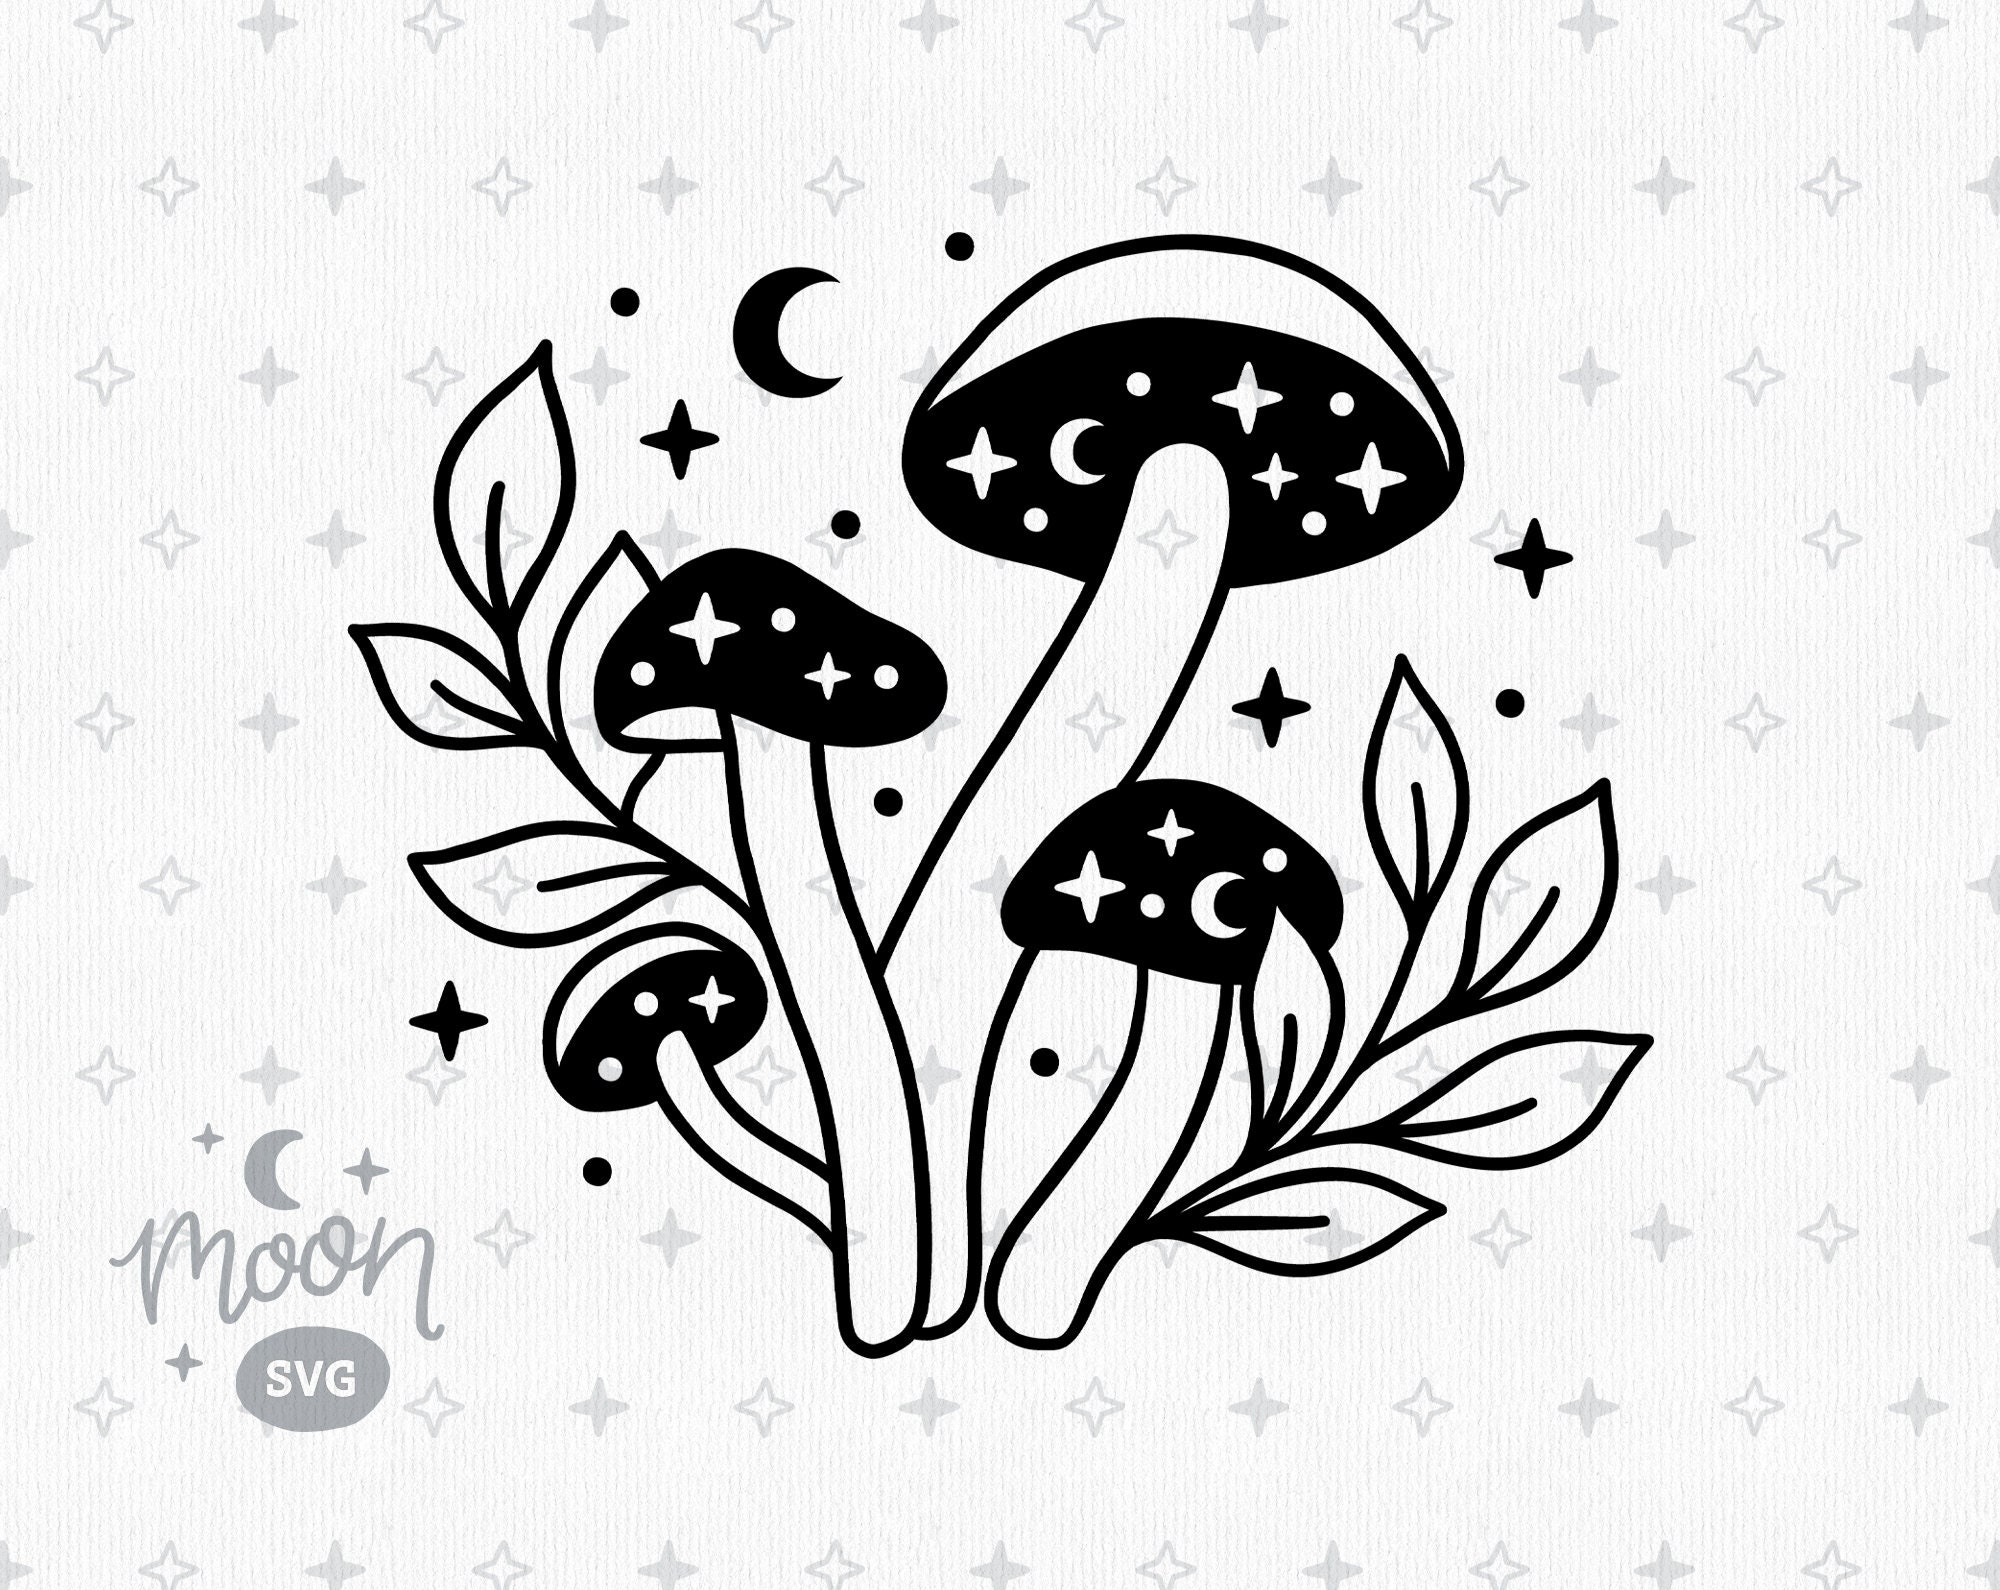 Mushroom bundle svg,mushroom clipart,mushroom vector,mushroom silhouette,.....